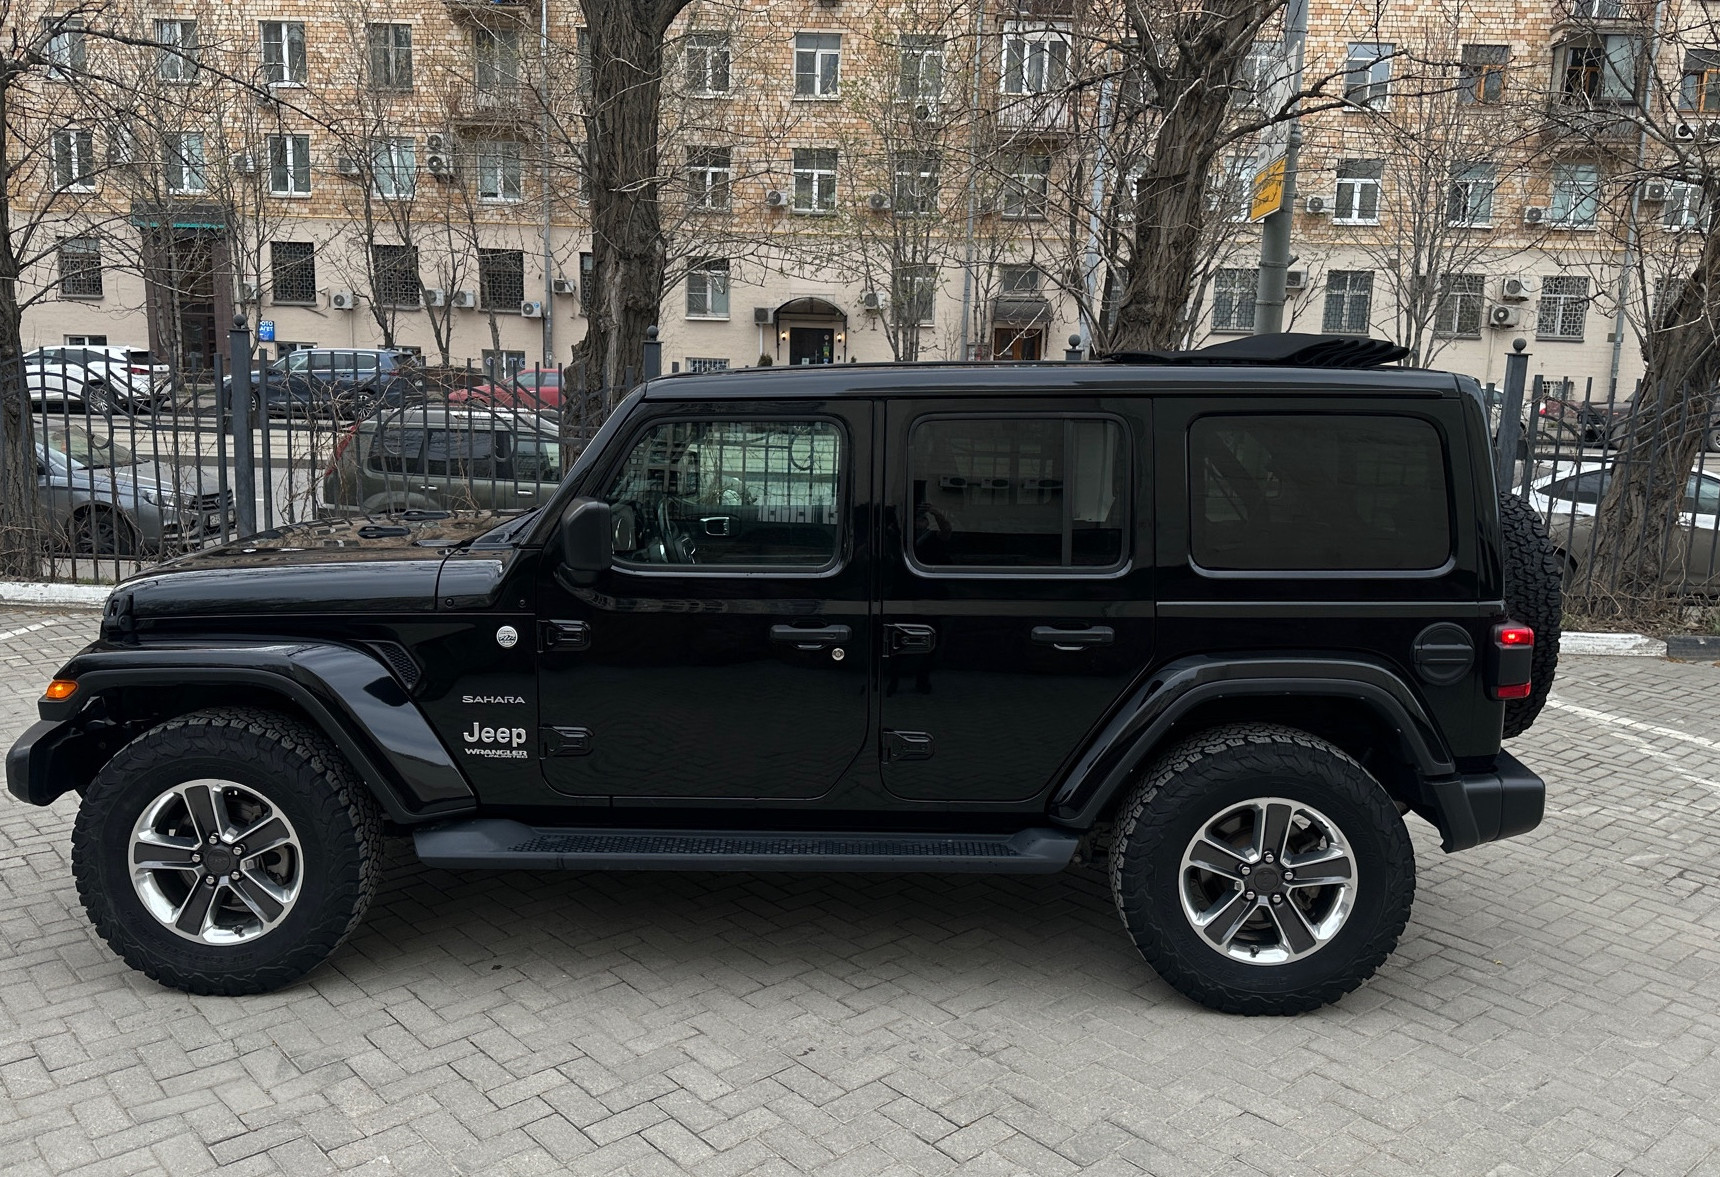 Аренда jeep wrangler премиум класса 2021 года в городе Москва Академическая от 16000 руб./сутки, полный привод, двигатель: бензин, объем 2 литра, ОСАГО (Мультидрайв), без водителя, недорого, вид 2 - RentRide